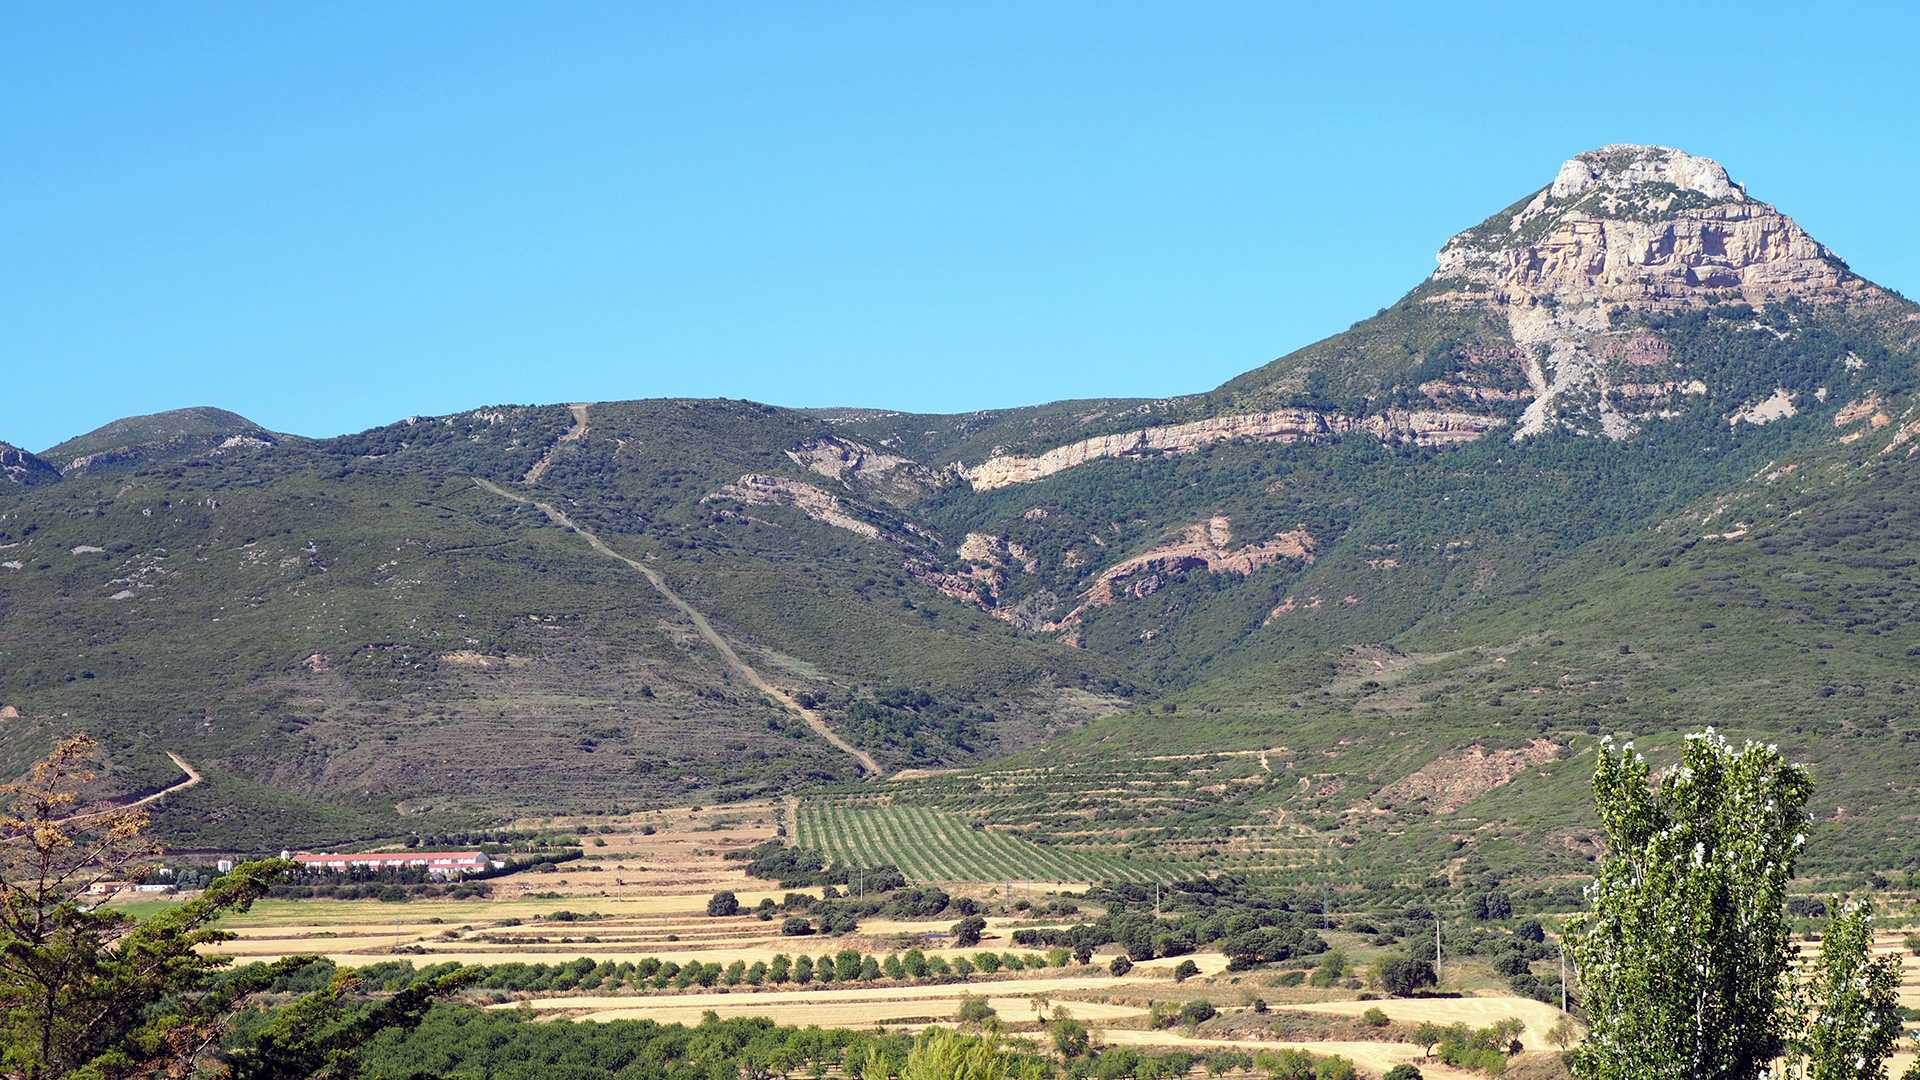 Vista del Gratal (1.563m) desde Puibolea. Este pico es un emblema en la comarca de la Hoya de Huesca y su figura es utilizada como símbolo frente a la ganadería industrial. En primer plano puede verse una explotación de porcino